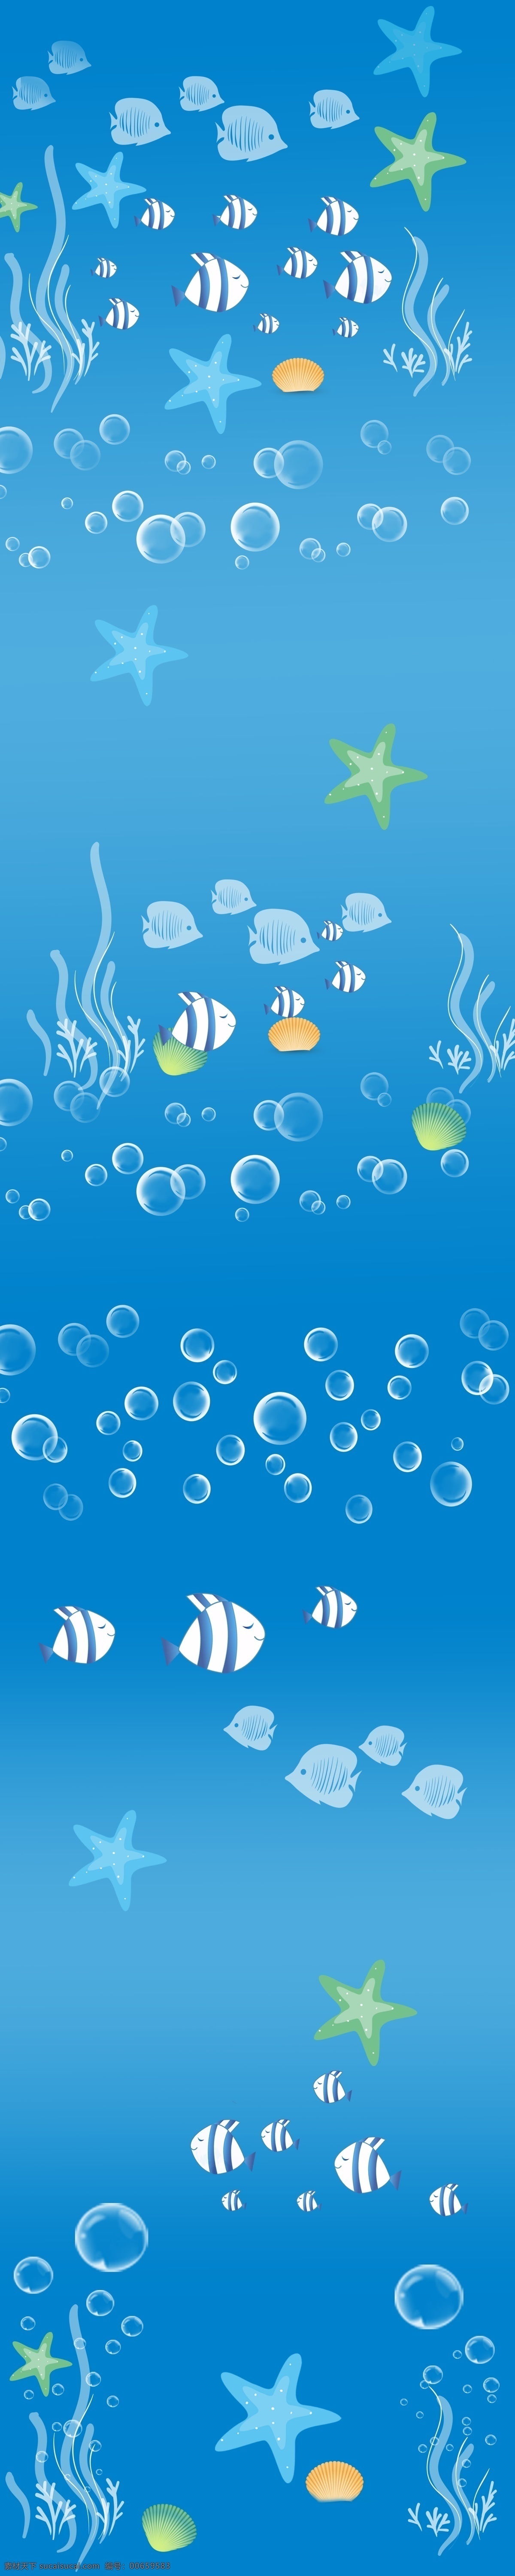 海洋 类 窗帘 图案 模版下载 图案设计 海星 海草 气泡 鱼 贝壳 海洋鱼类 卡通 动物 植物 海底世界 蓝色 背景图案 窗帘花纹 源文件